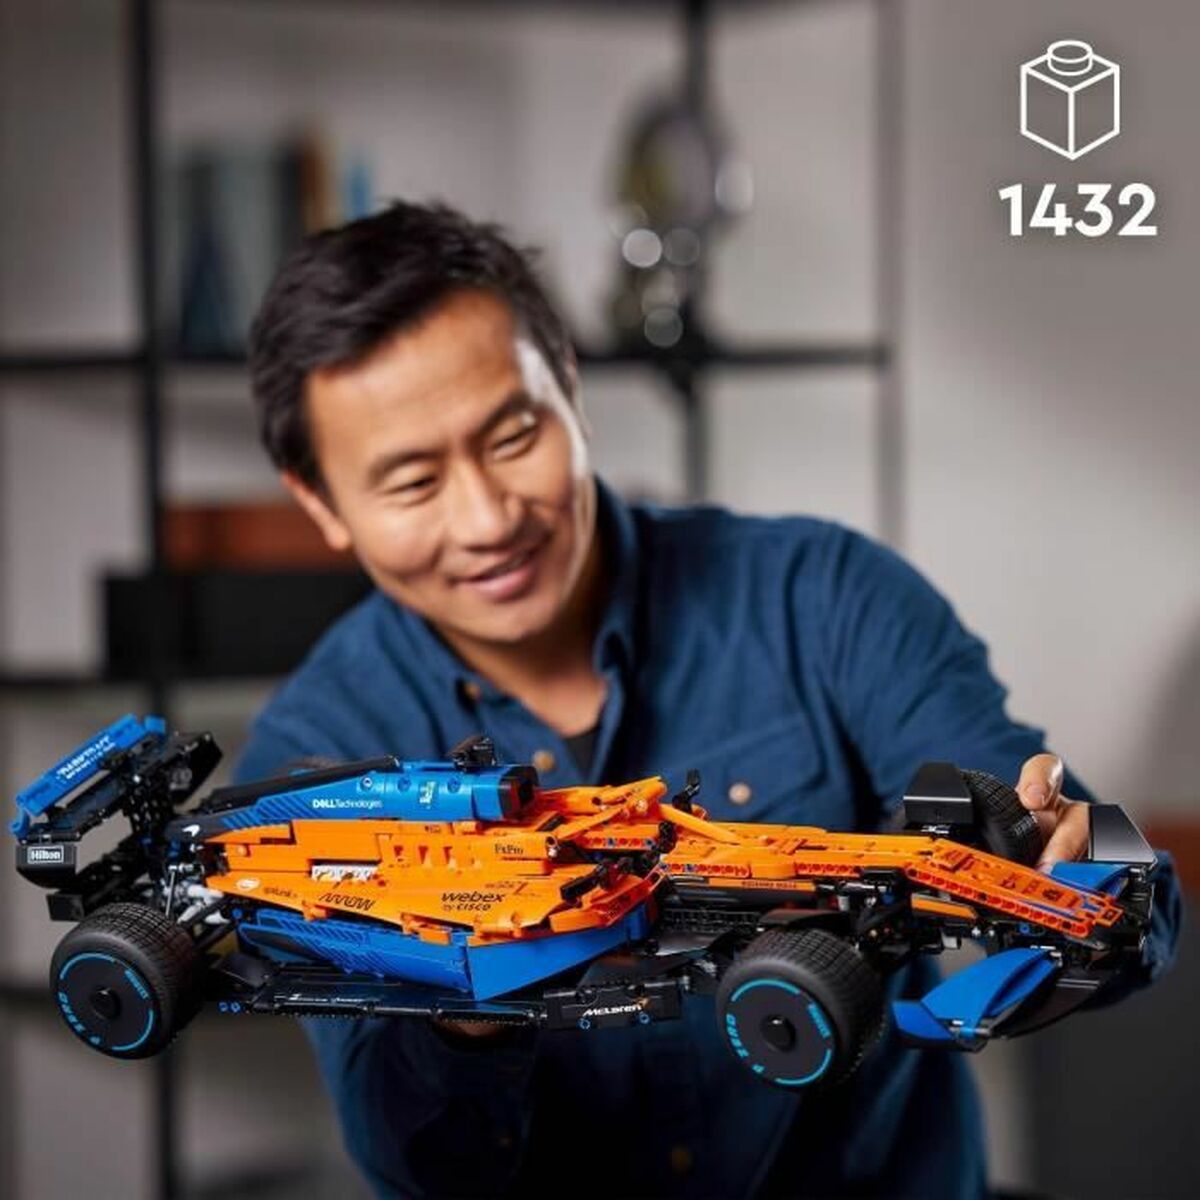 Bouwspel   Lego Technic The McLaren Formula 1 2022